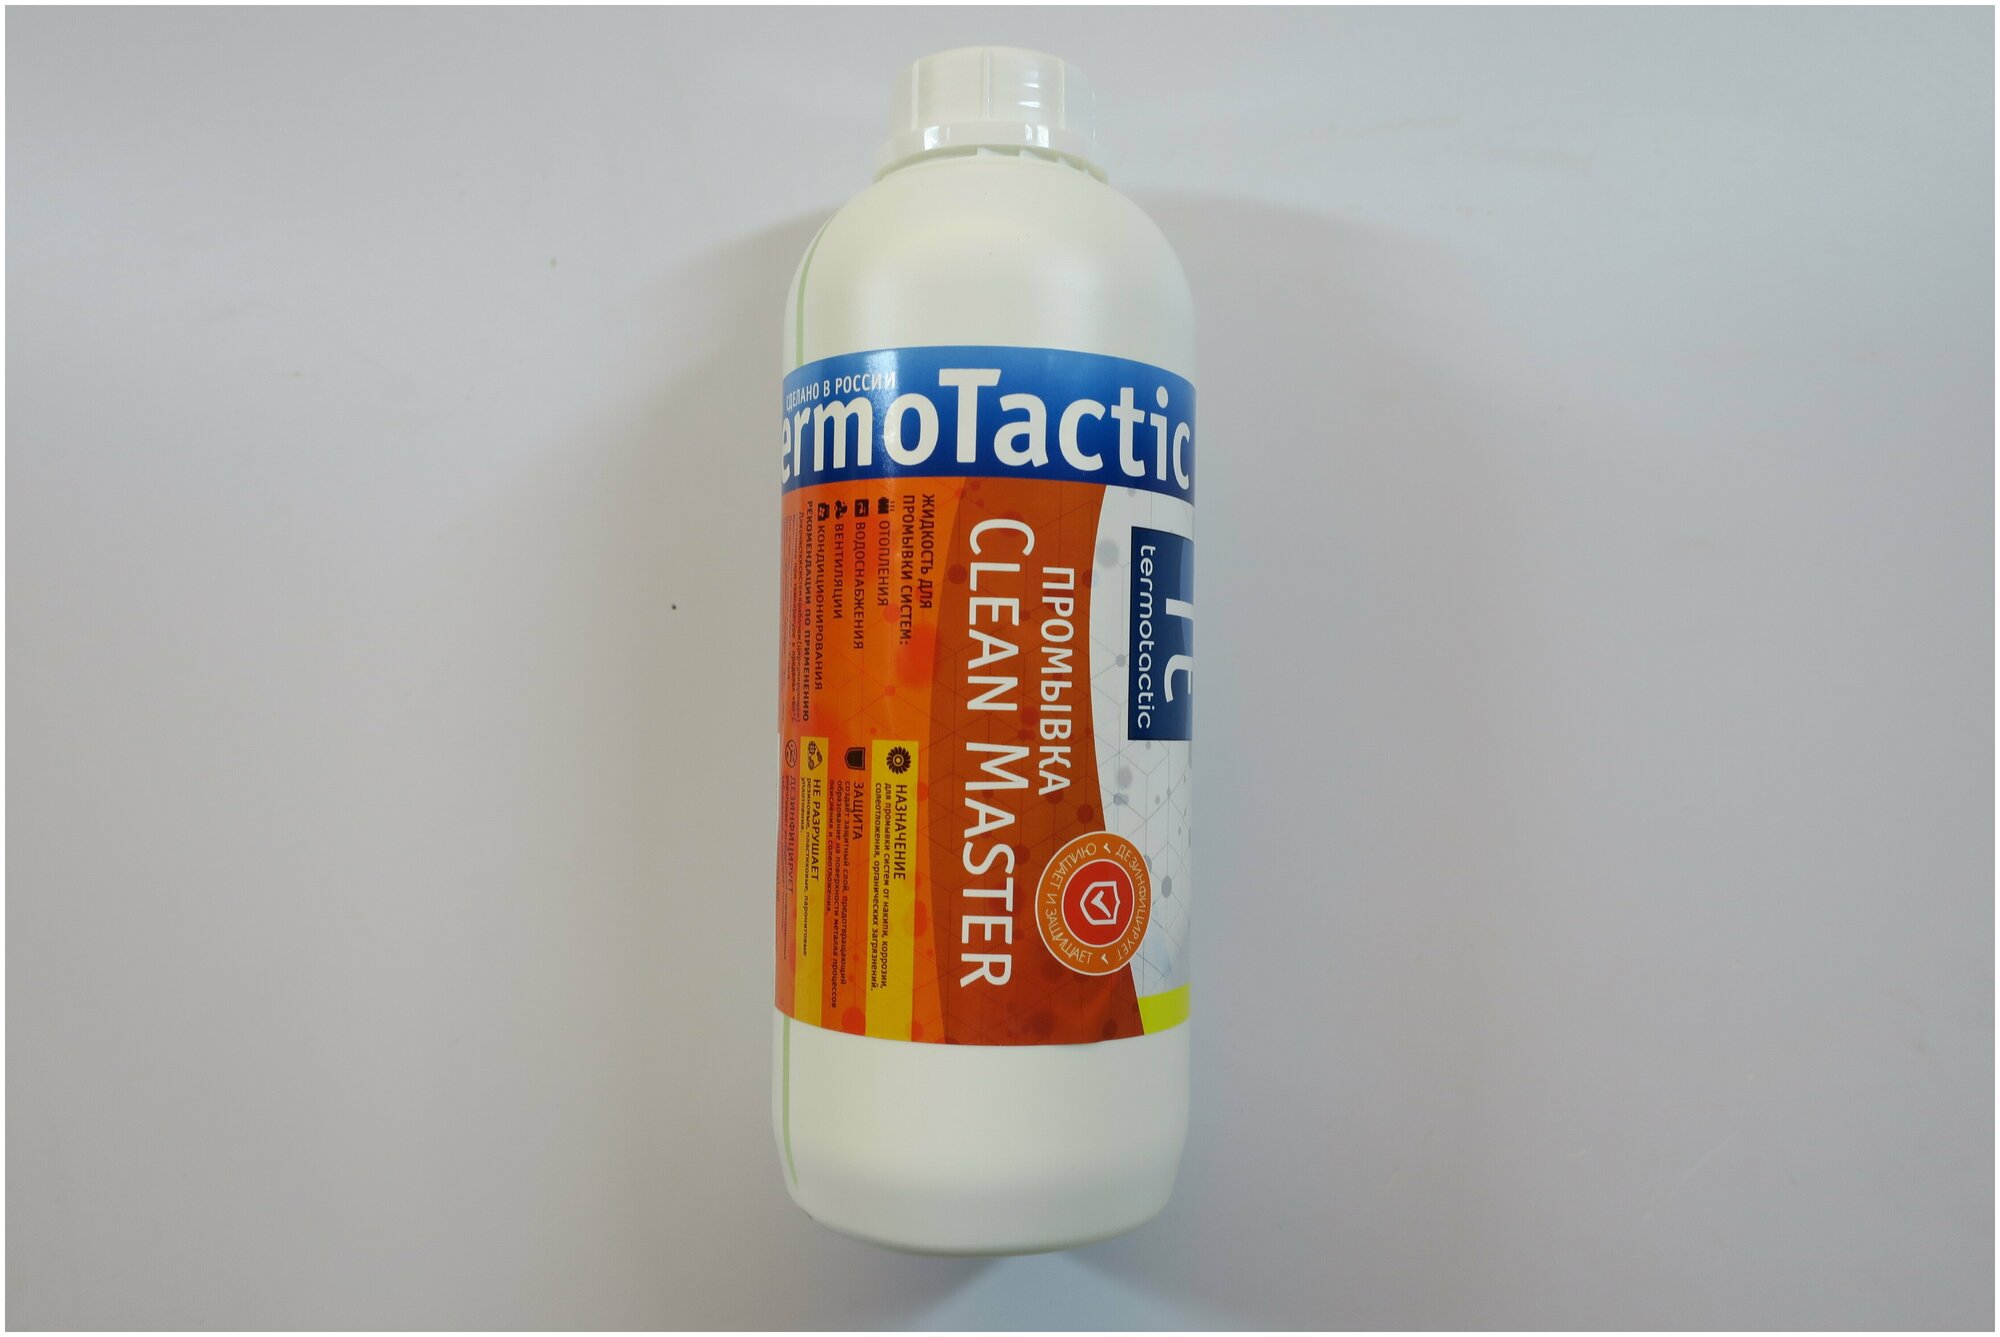 Жидкость для промывки теплообменников TermoTactic "Clean Master", 1 литр (концентрат)